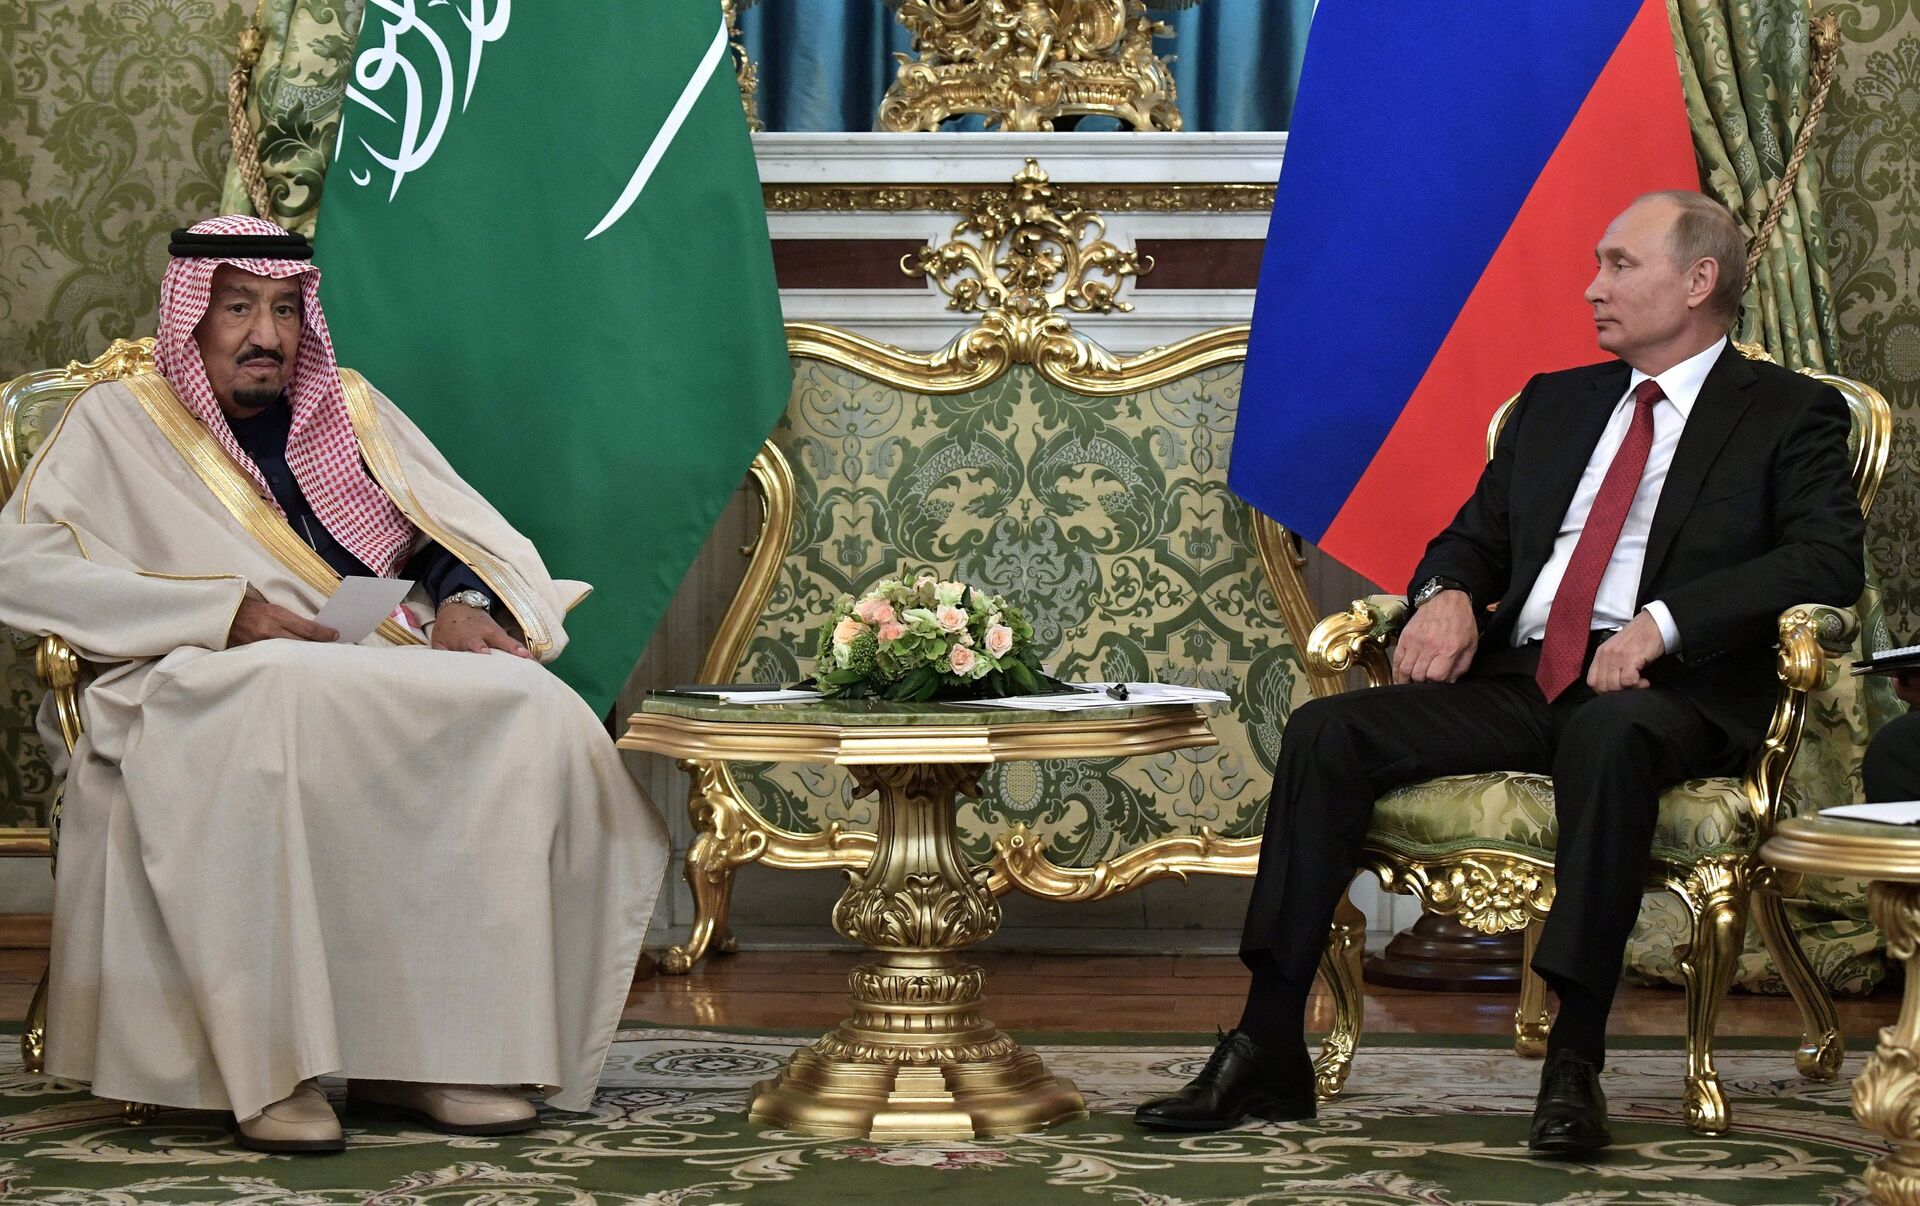 المملكة العربية السعودية تعلن عن استثمار 500 مليون دولار في روسيا